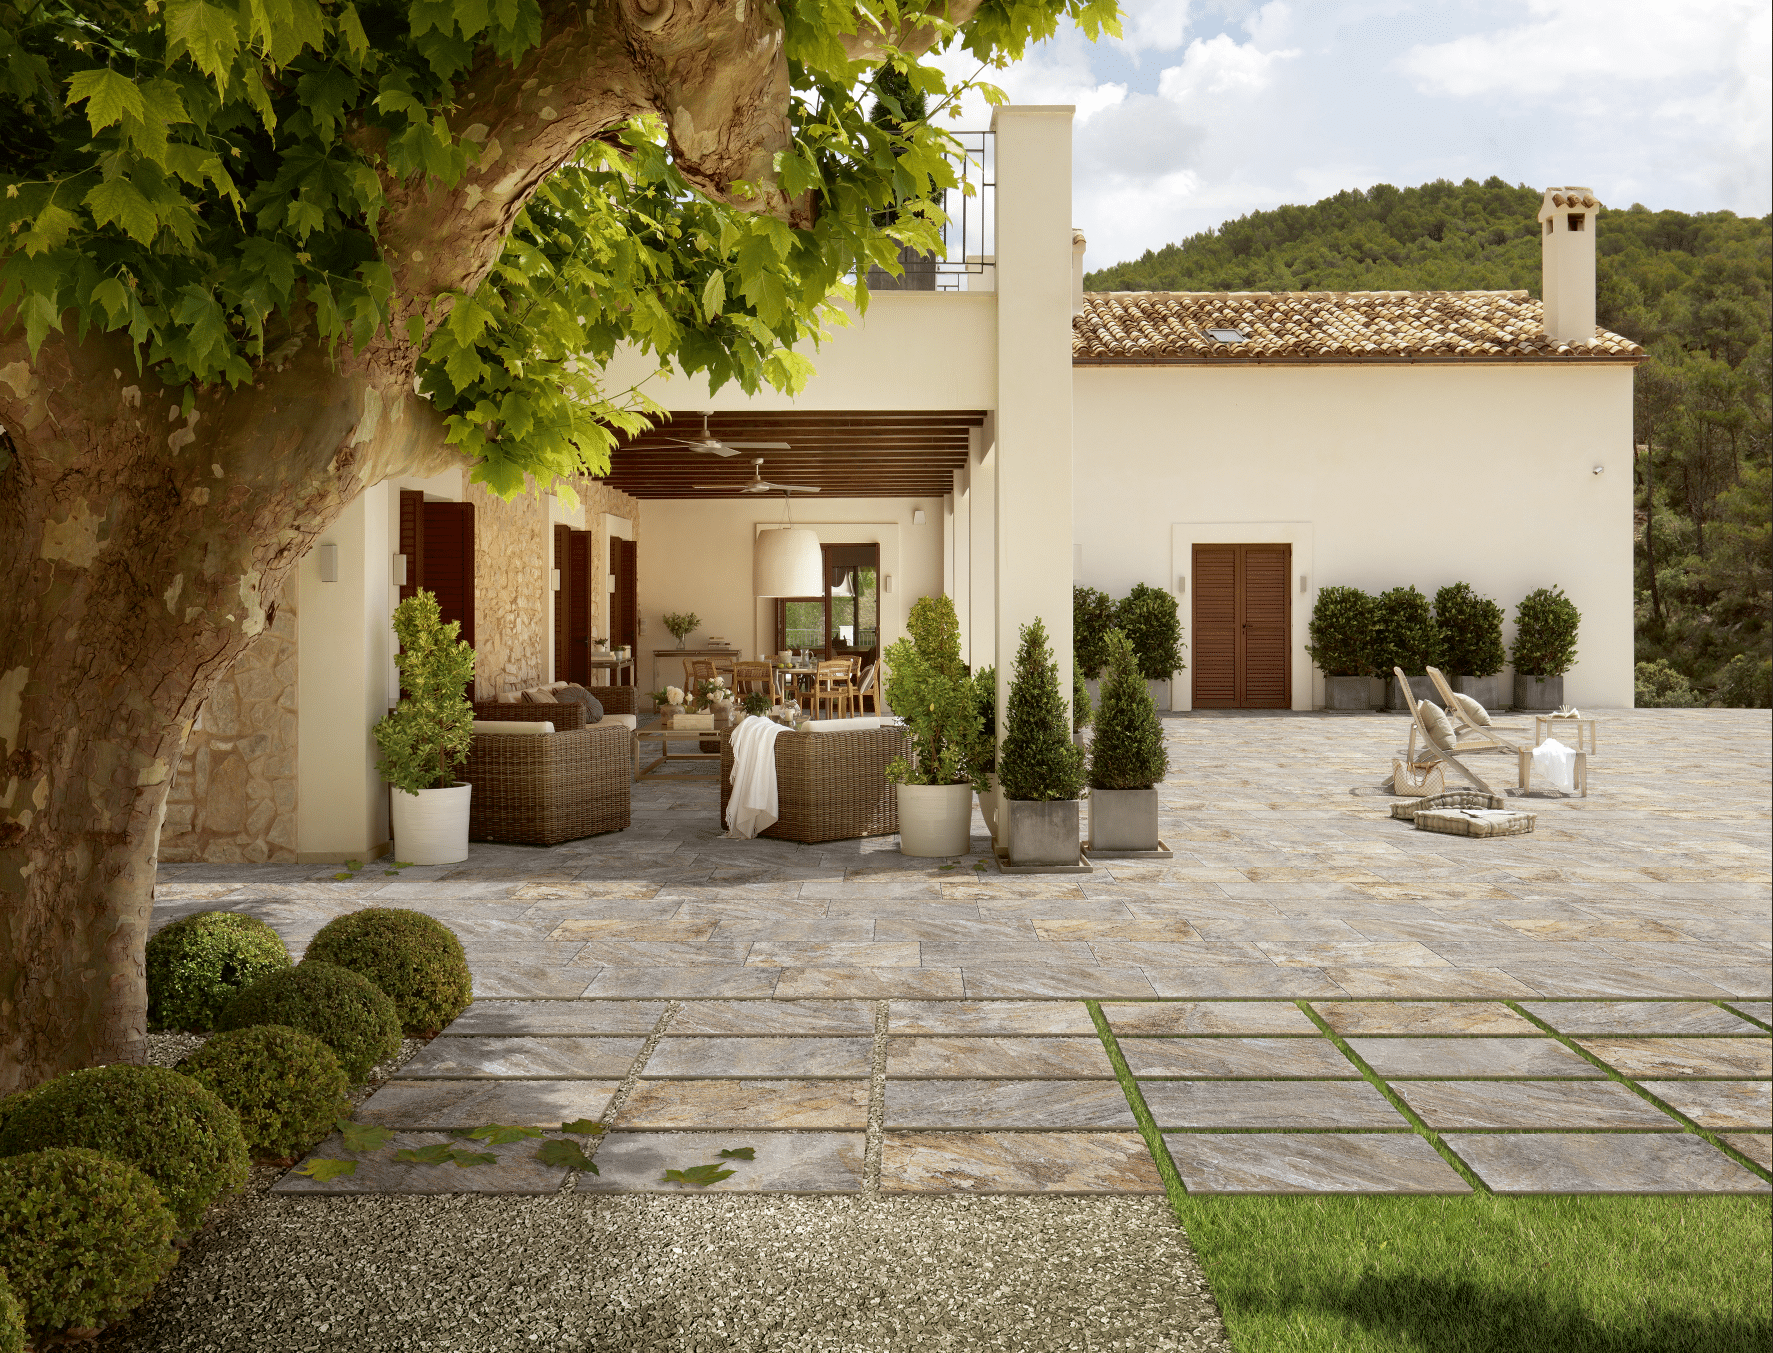 Mediterranes Landhaus samt Terrasse mit Steinzeug von Fliesendorf, ausgestattet mit Topfpflanzen, Liegestühlen und Rattanmöbeln für den Garten.